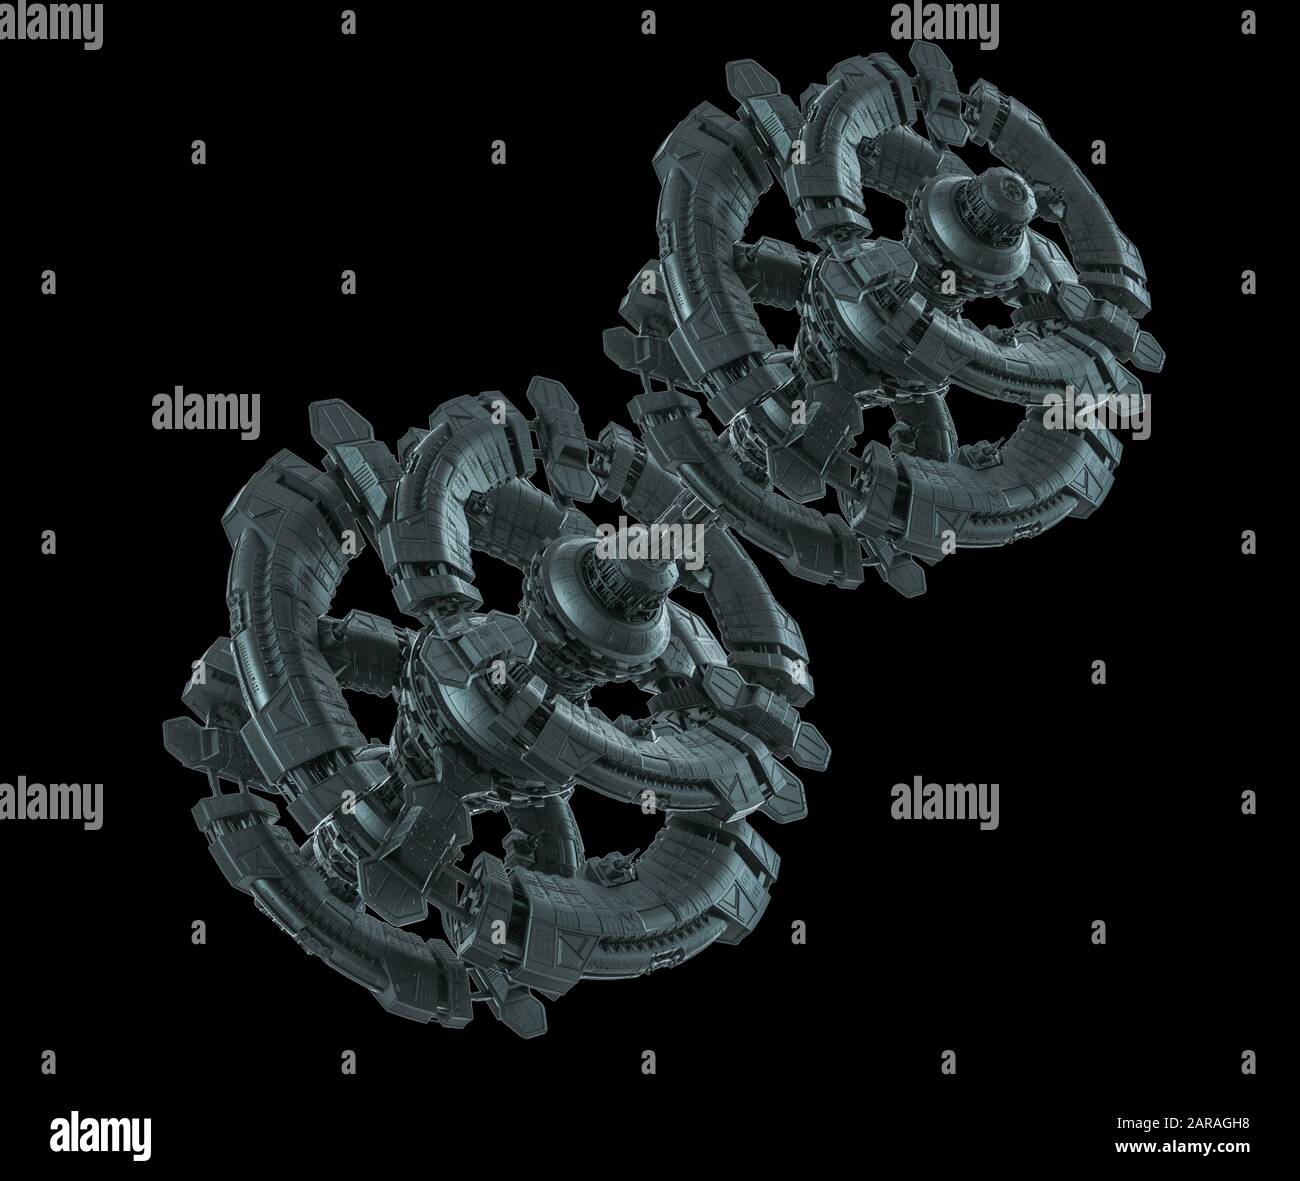 Astronave - Illustrazione sfondo nero - illustrazione 3D Foto Stock